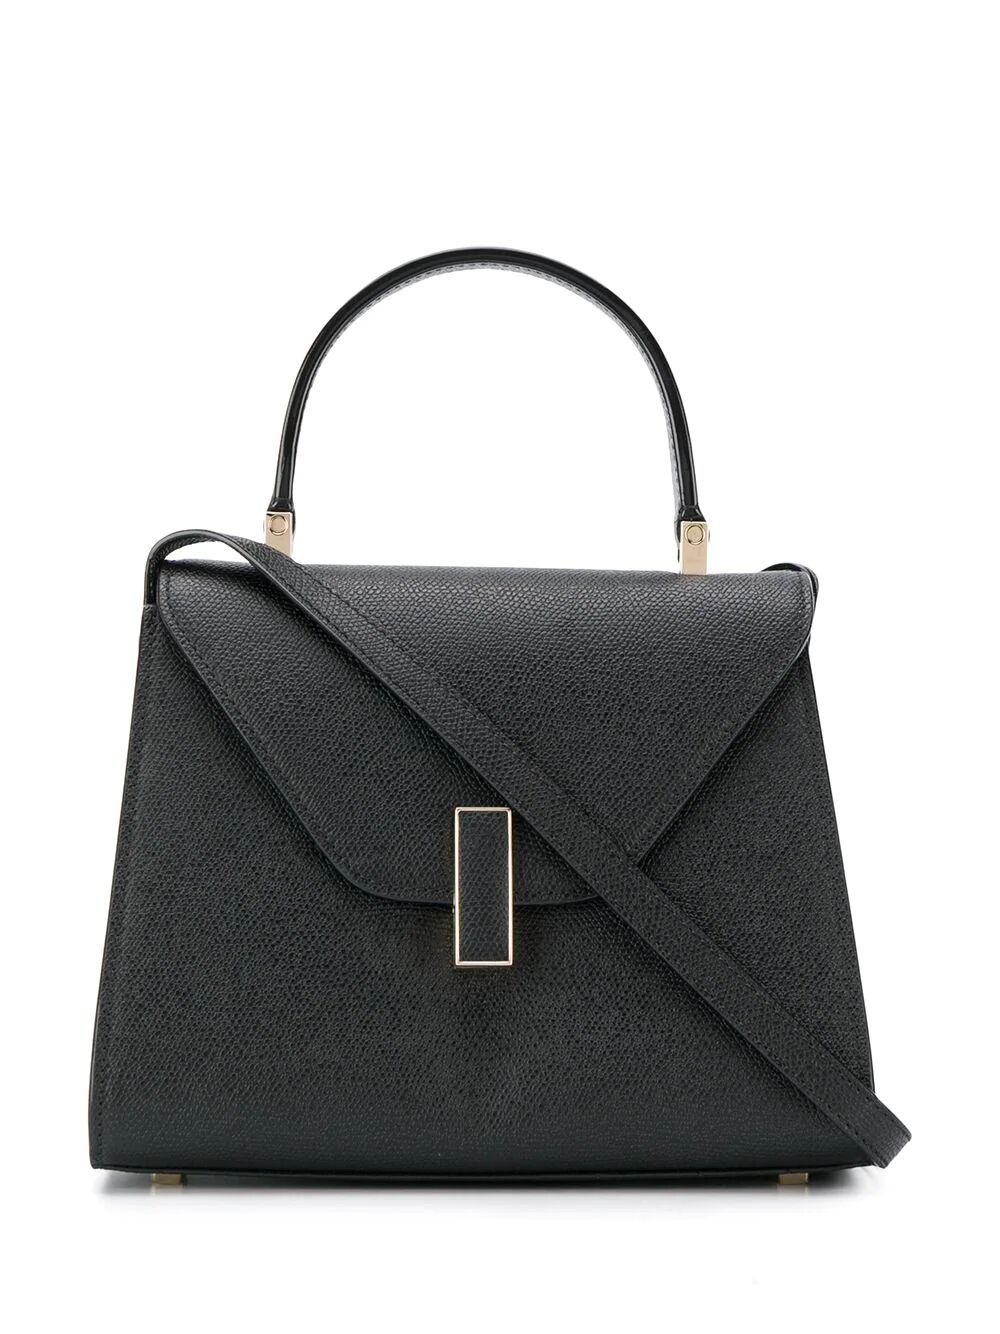 Valextra Iside Mini Bag In Black